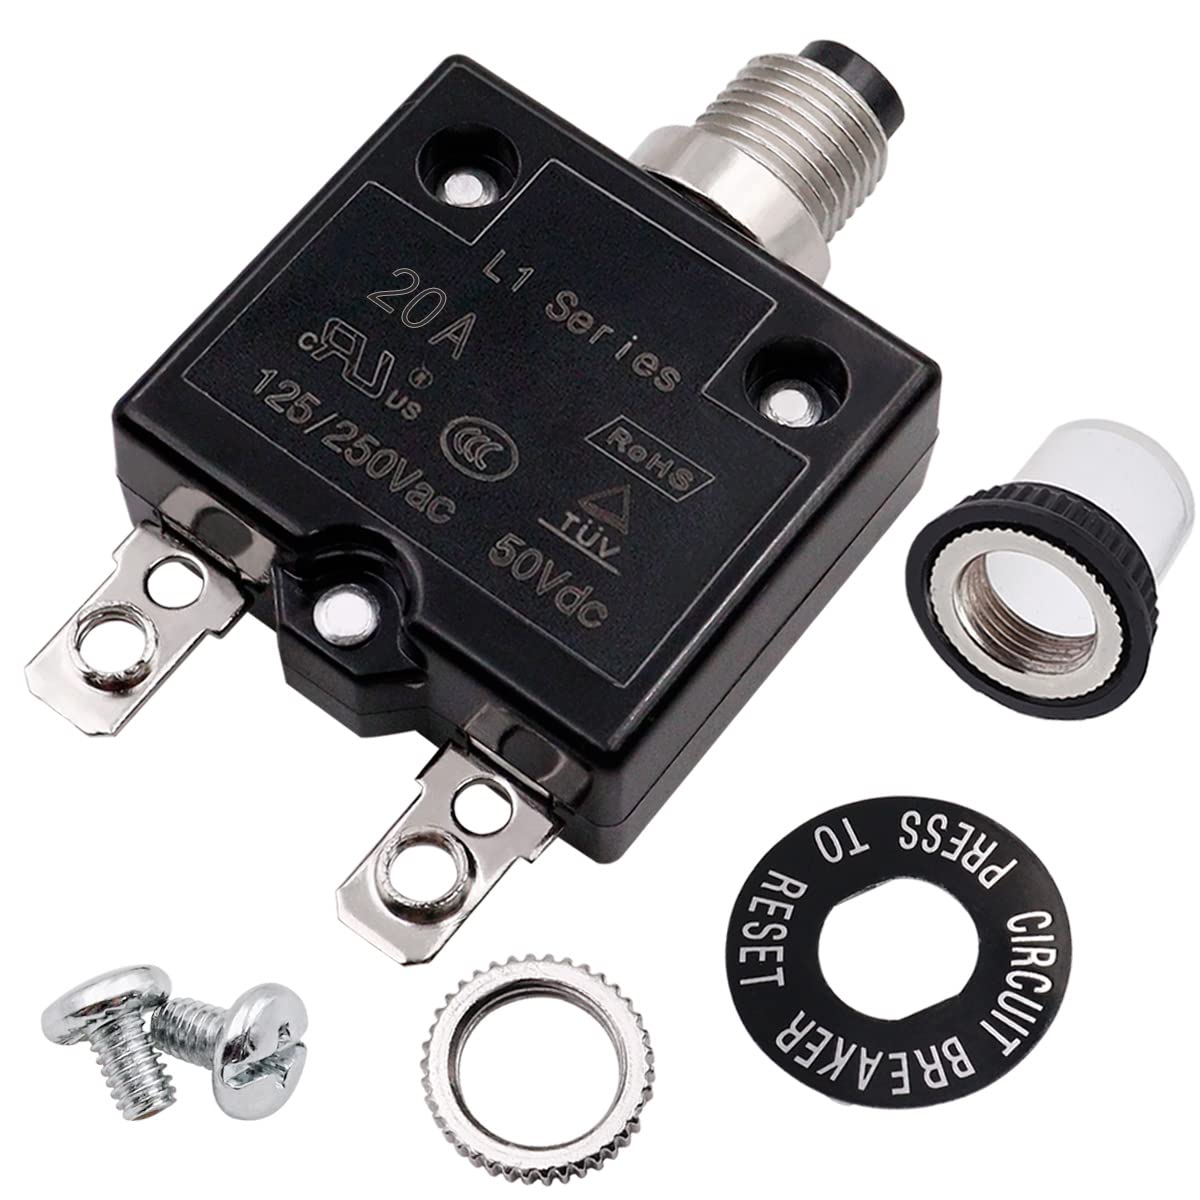 Interruptor eléctrico de botones de 20 amperios 125/250 VAC, protector de sobrecarga térmica serie L1 con terminales de conexión rápida y tapa de botón impermeable L1-ls-20A